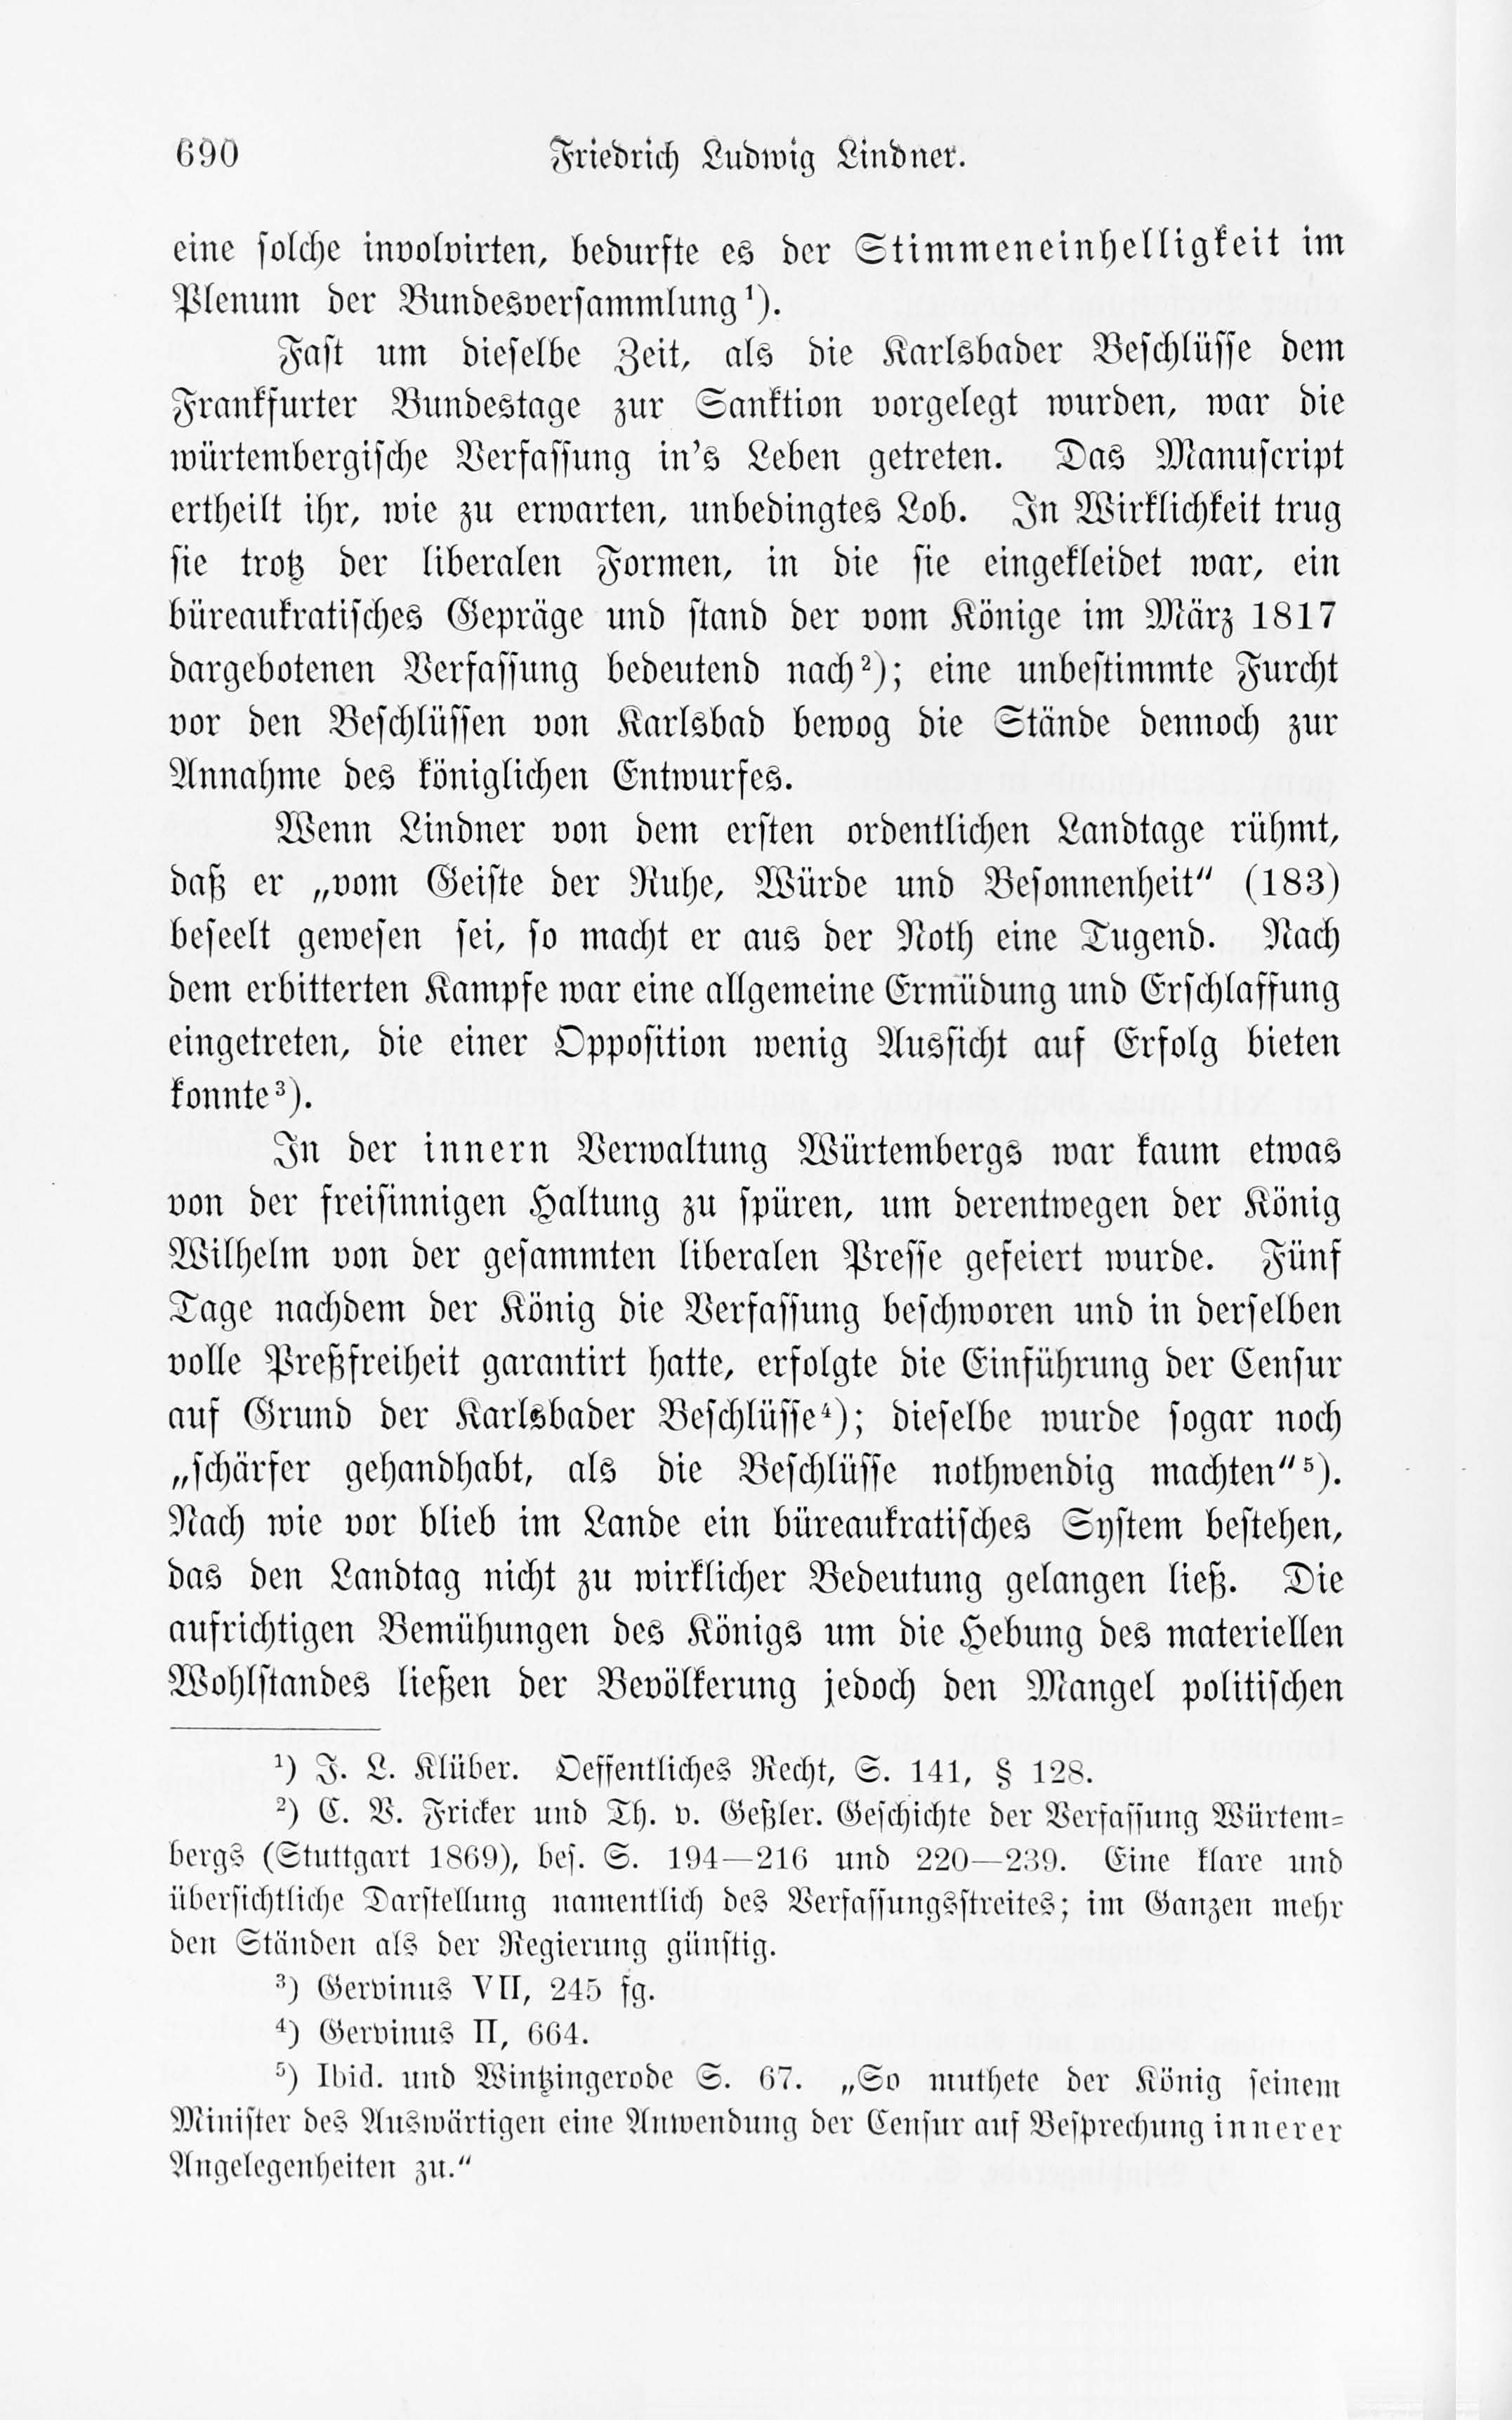 Leben und Schriften des Kurländers Friedrich Ludwig Lindner [2] (1895) | 20. Haupttext